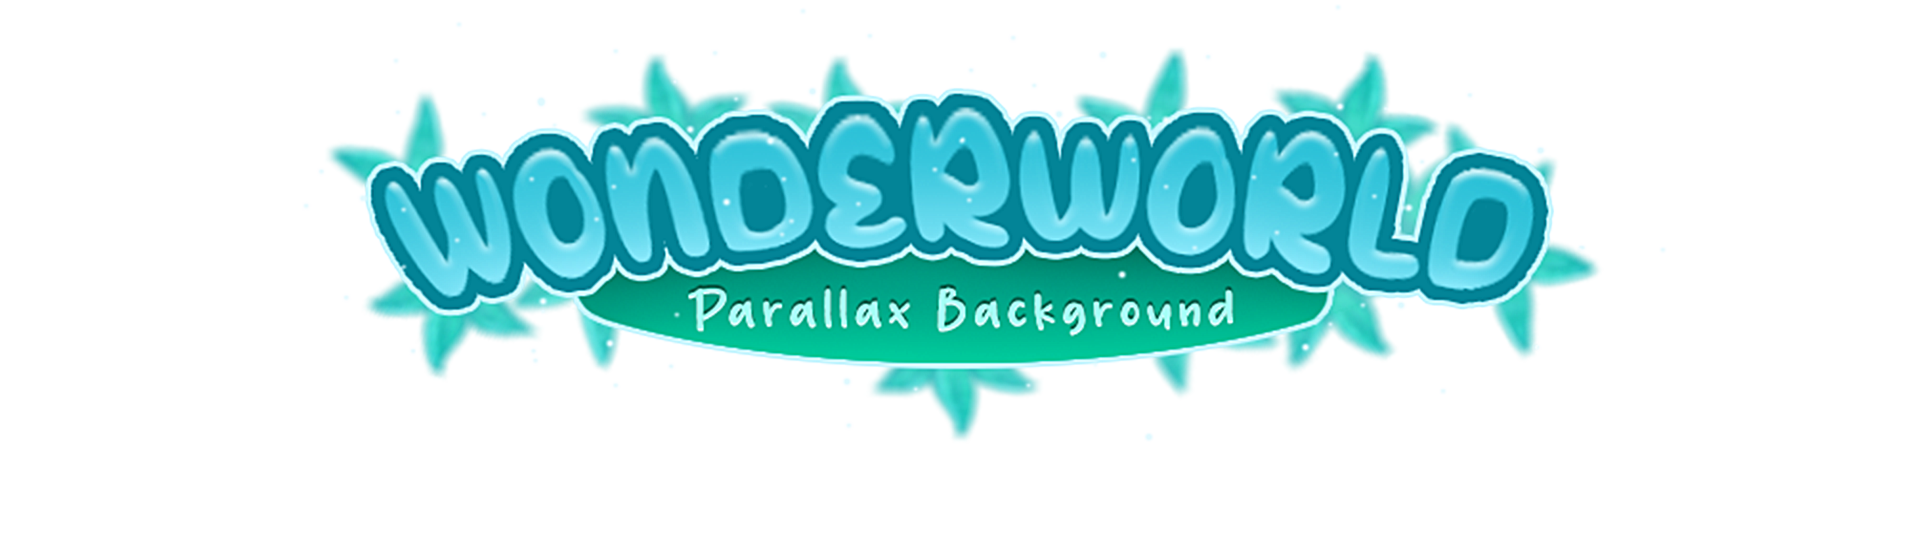 Wonderworld Parallax Background